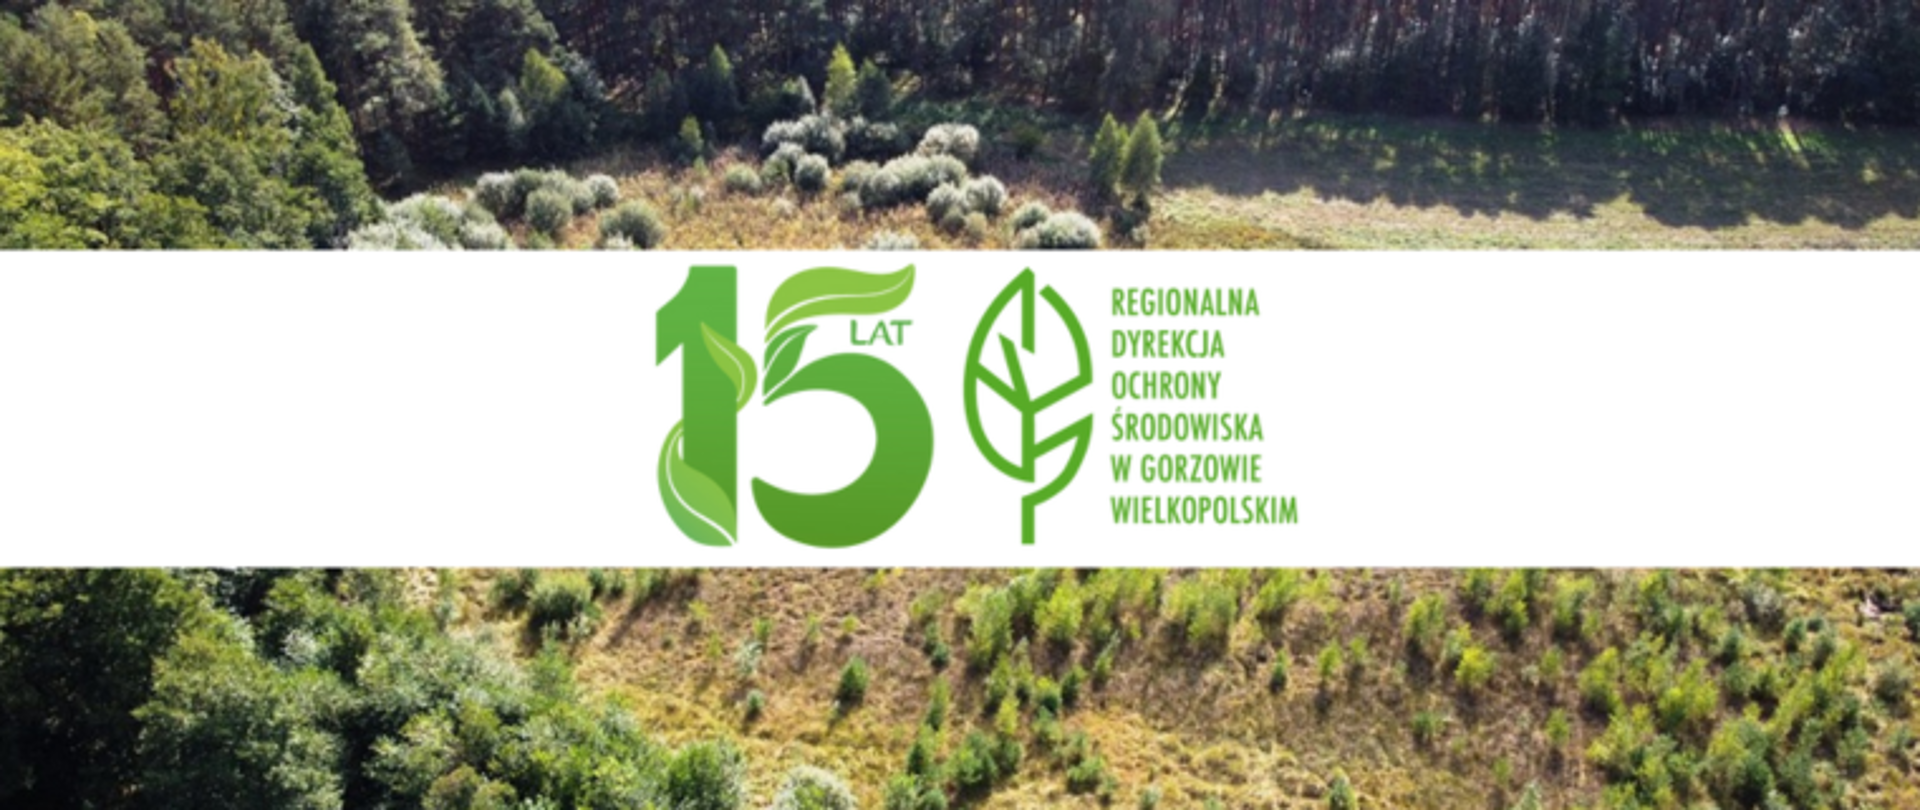 W tle krajobraz z lasem, na pierwszym planie biały prostokątny pasek, na nim zielony liść i napis Regionalna Dyrekcja Ochrony Środowiska w Gorzowie Wielkopolskim i liczba 15 lat.